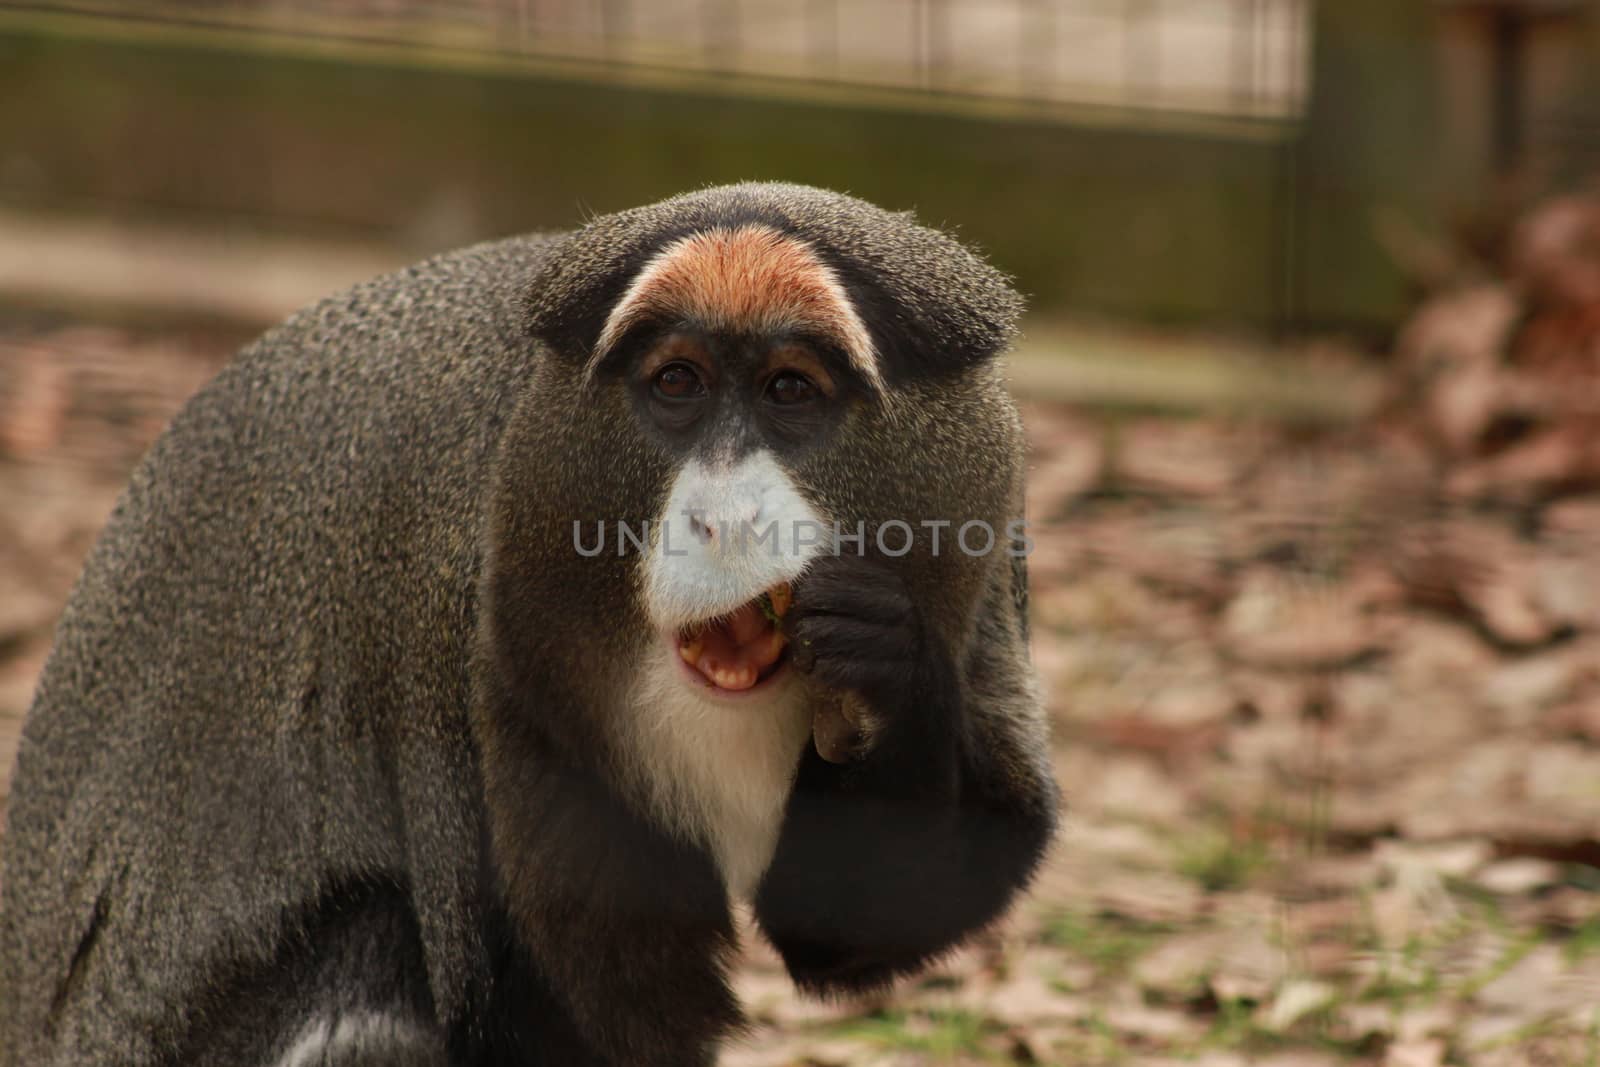 Guenon eating